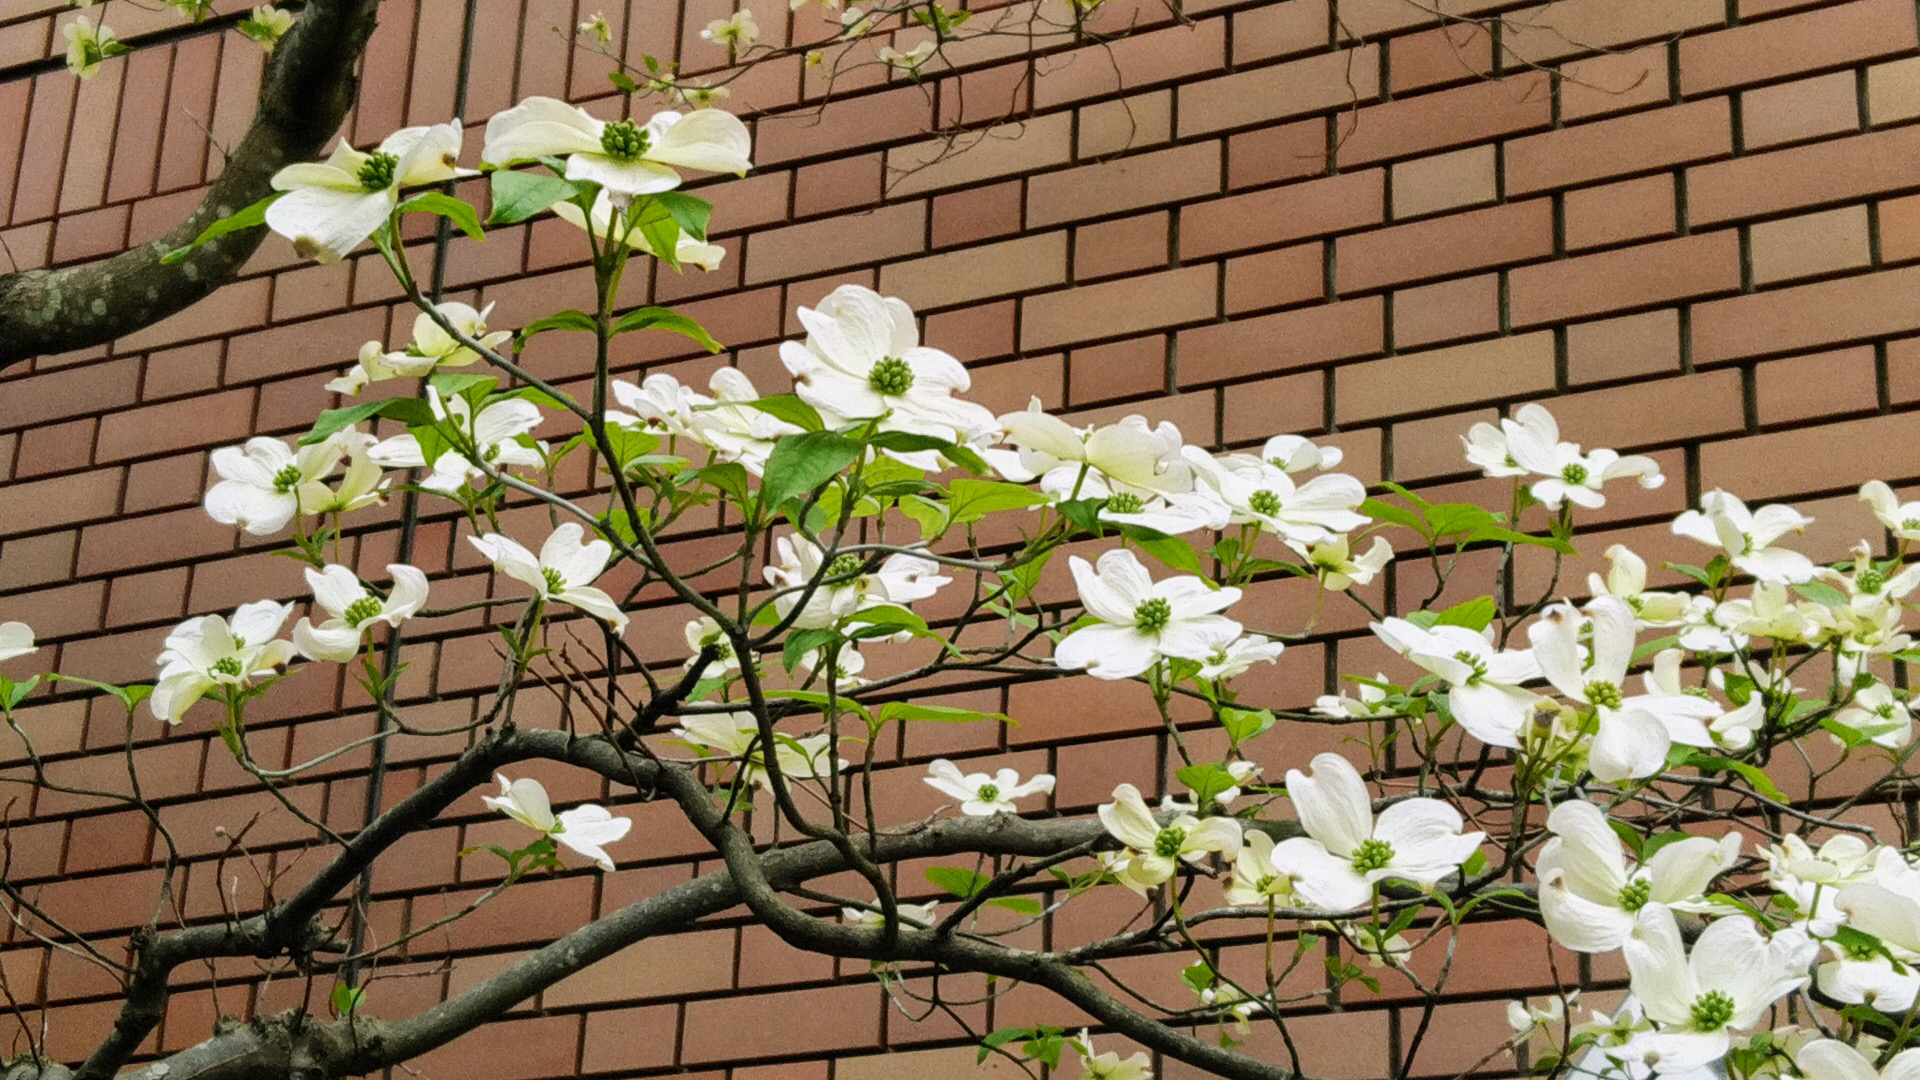 シリーズ 花咲く街路樹 観葉植物 4 5月 ハナミズキ 東京やまびこ植物園